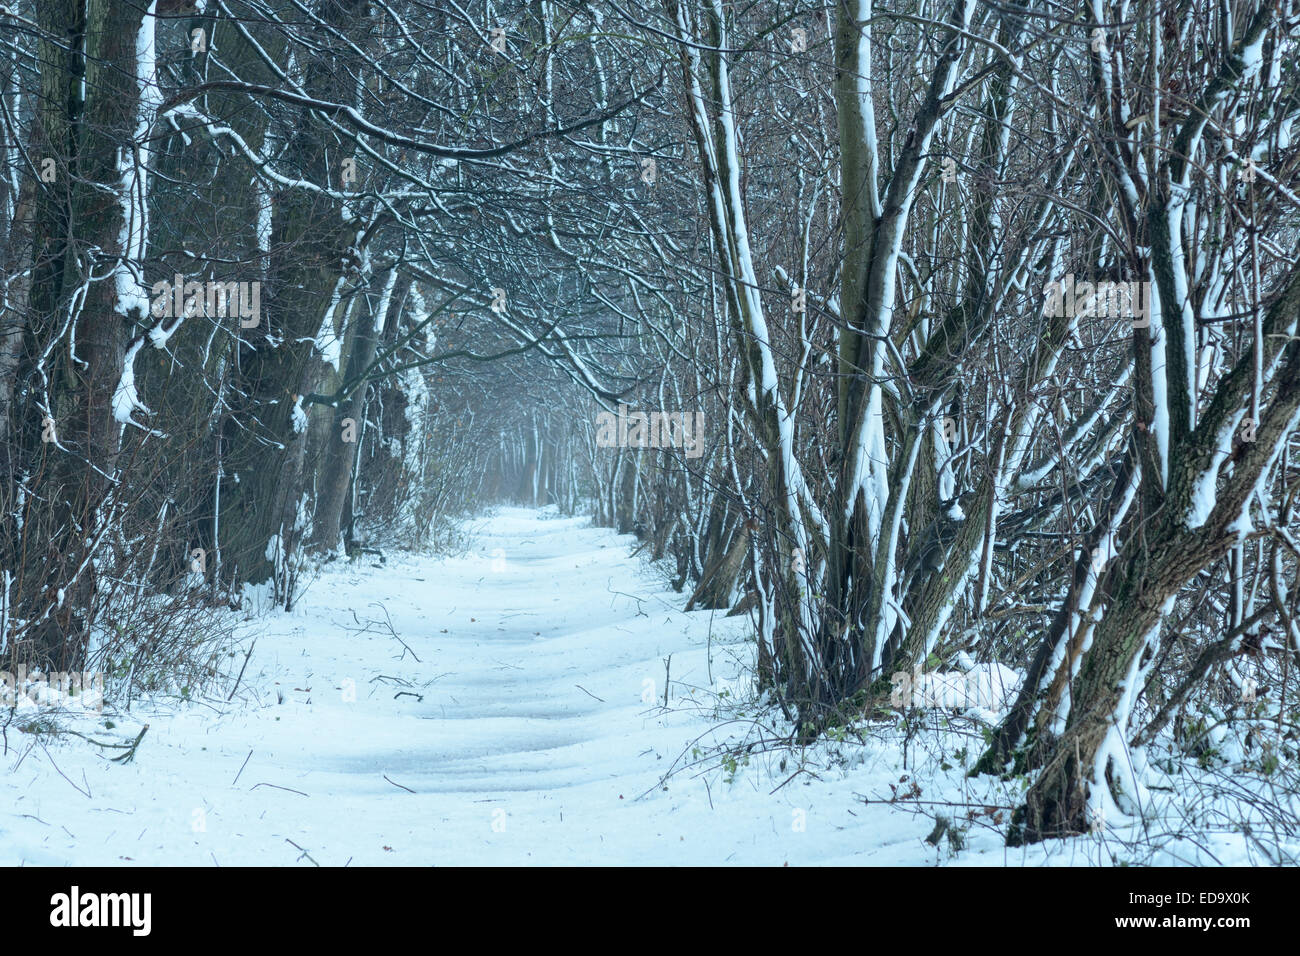 Escena de Invierno en un entorno de bosques.se asienta sobre un sendero de nieve y los árboles alrededor de esta escena de invierno de inglés. Foto de stock